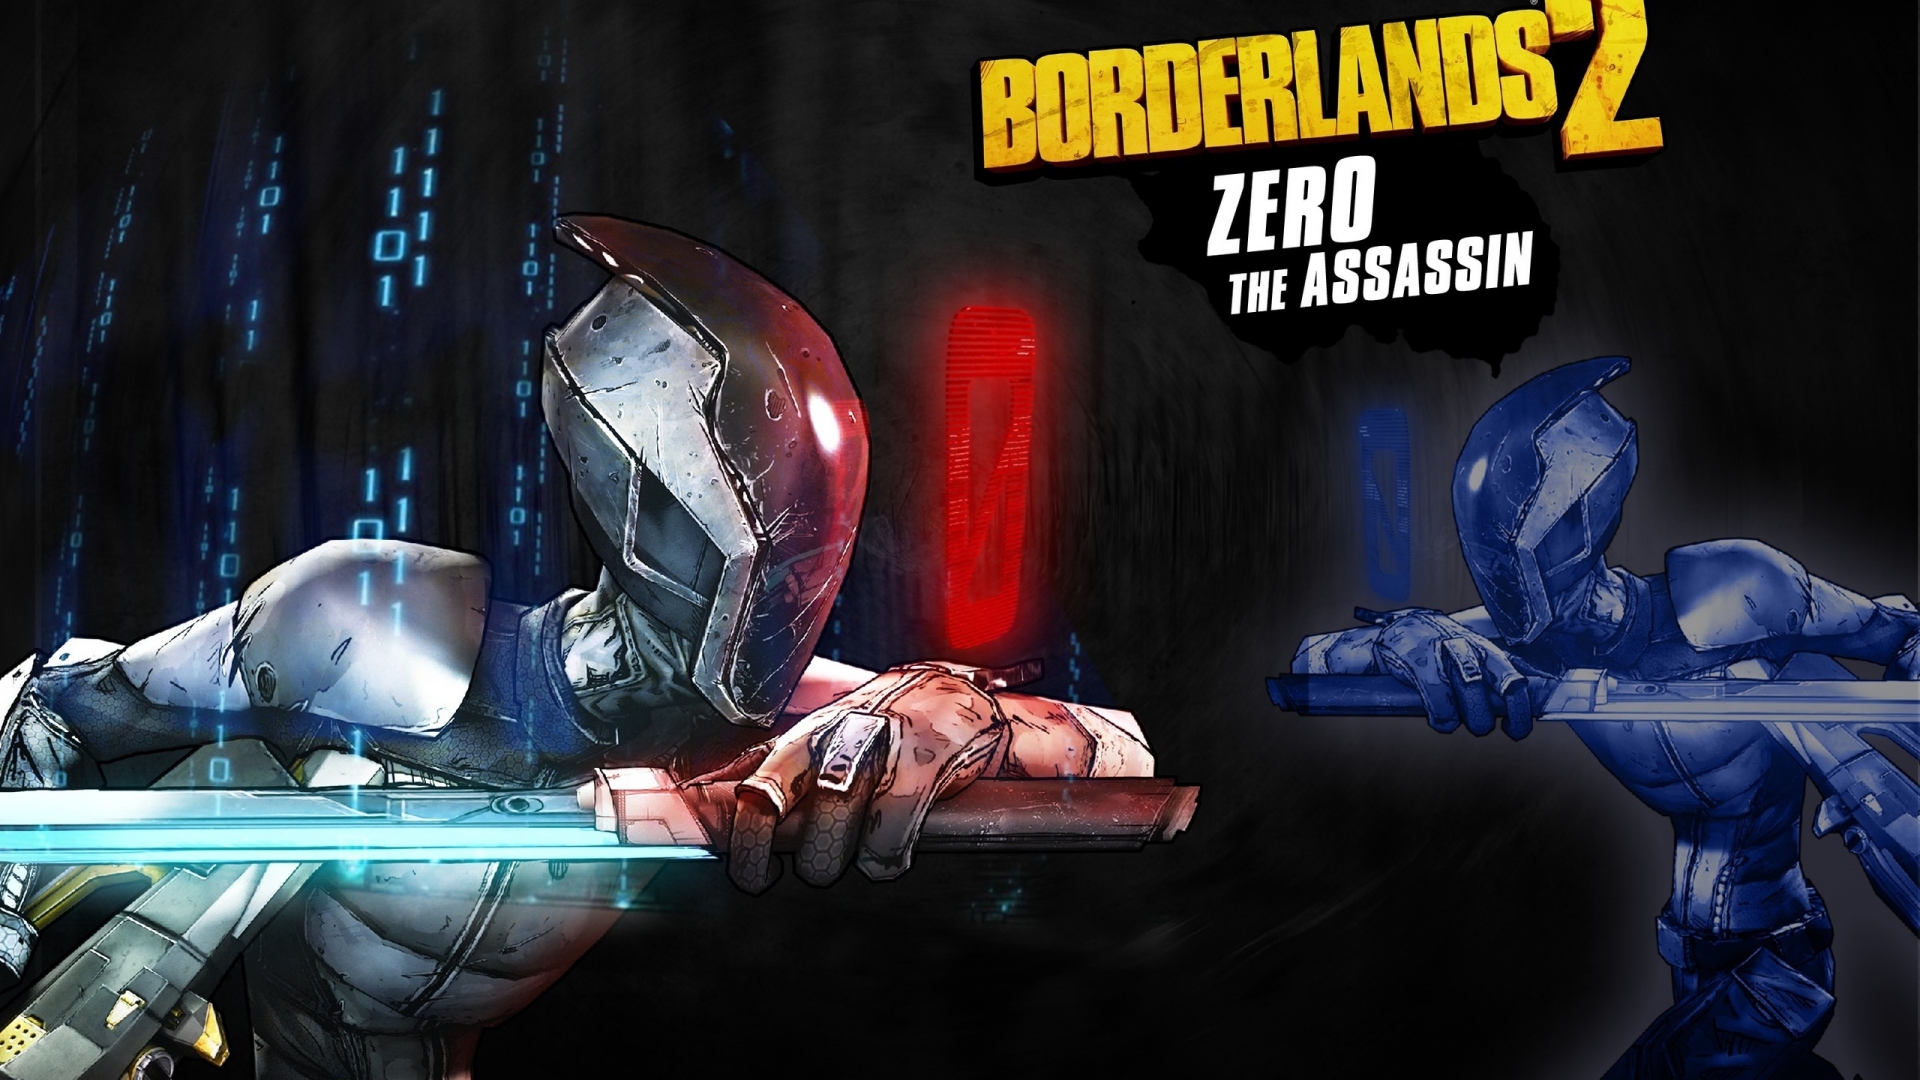 Zero The Assassin Borderlands 2  for 1920 x 1080 HDTV 1080p resolution